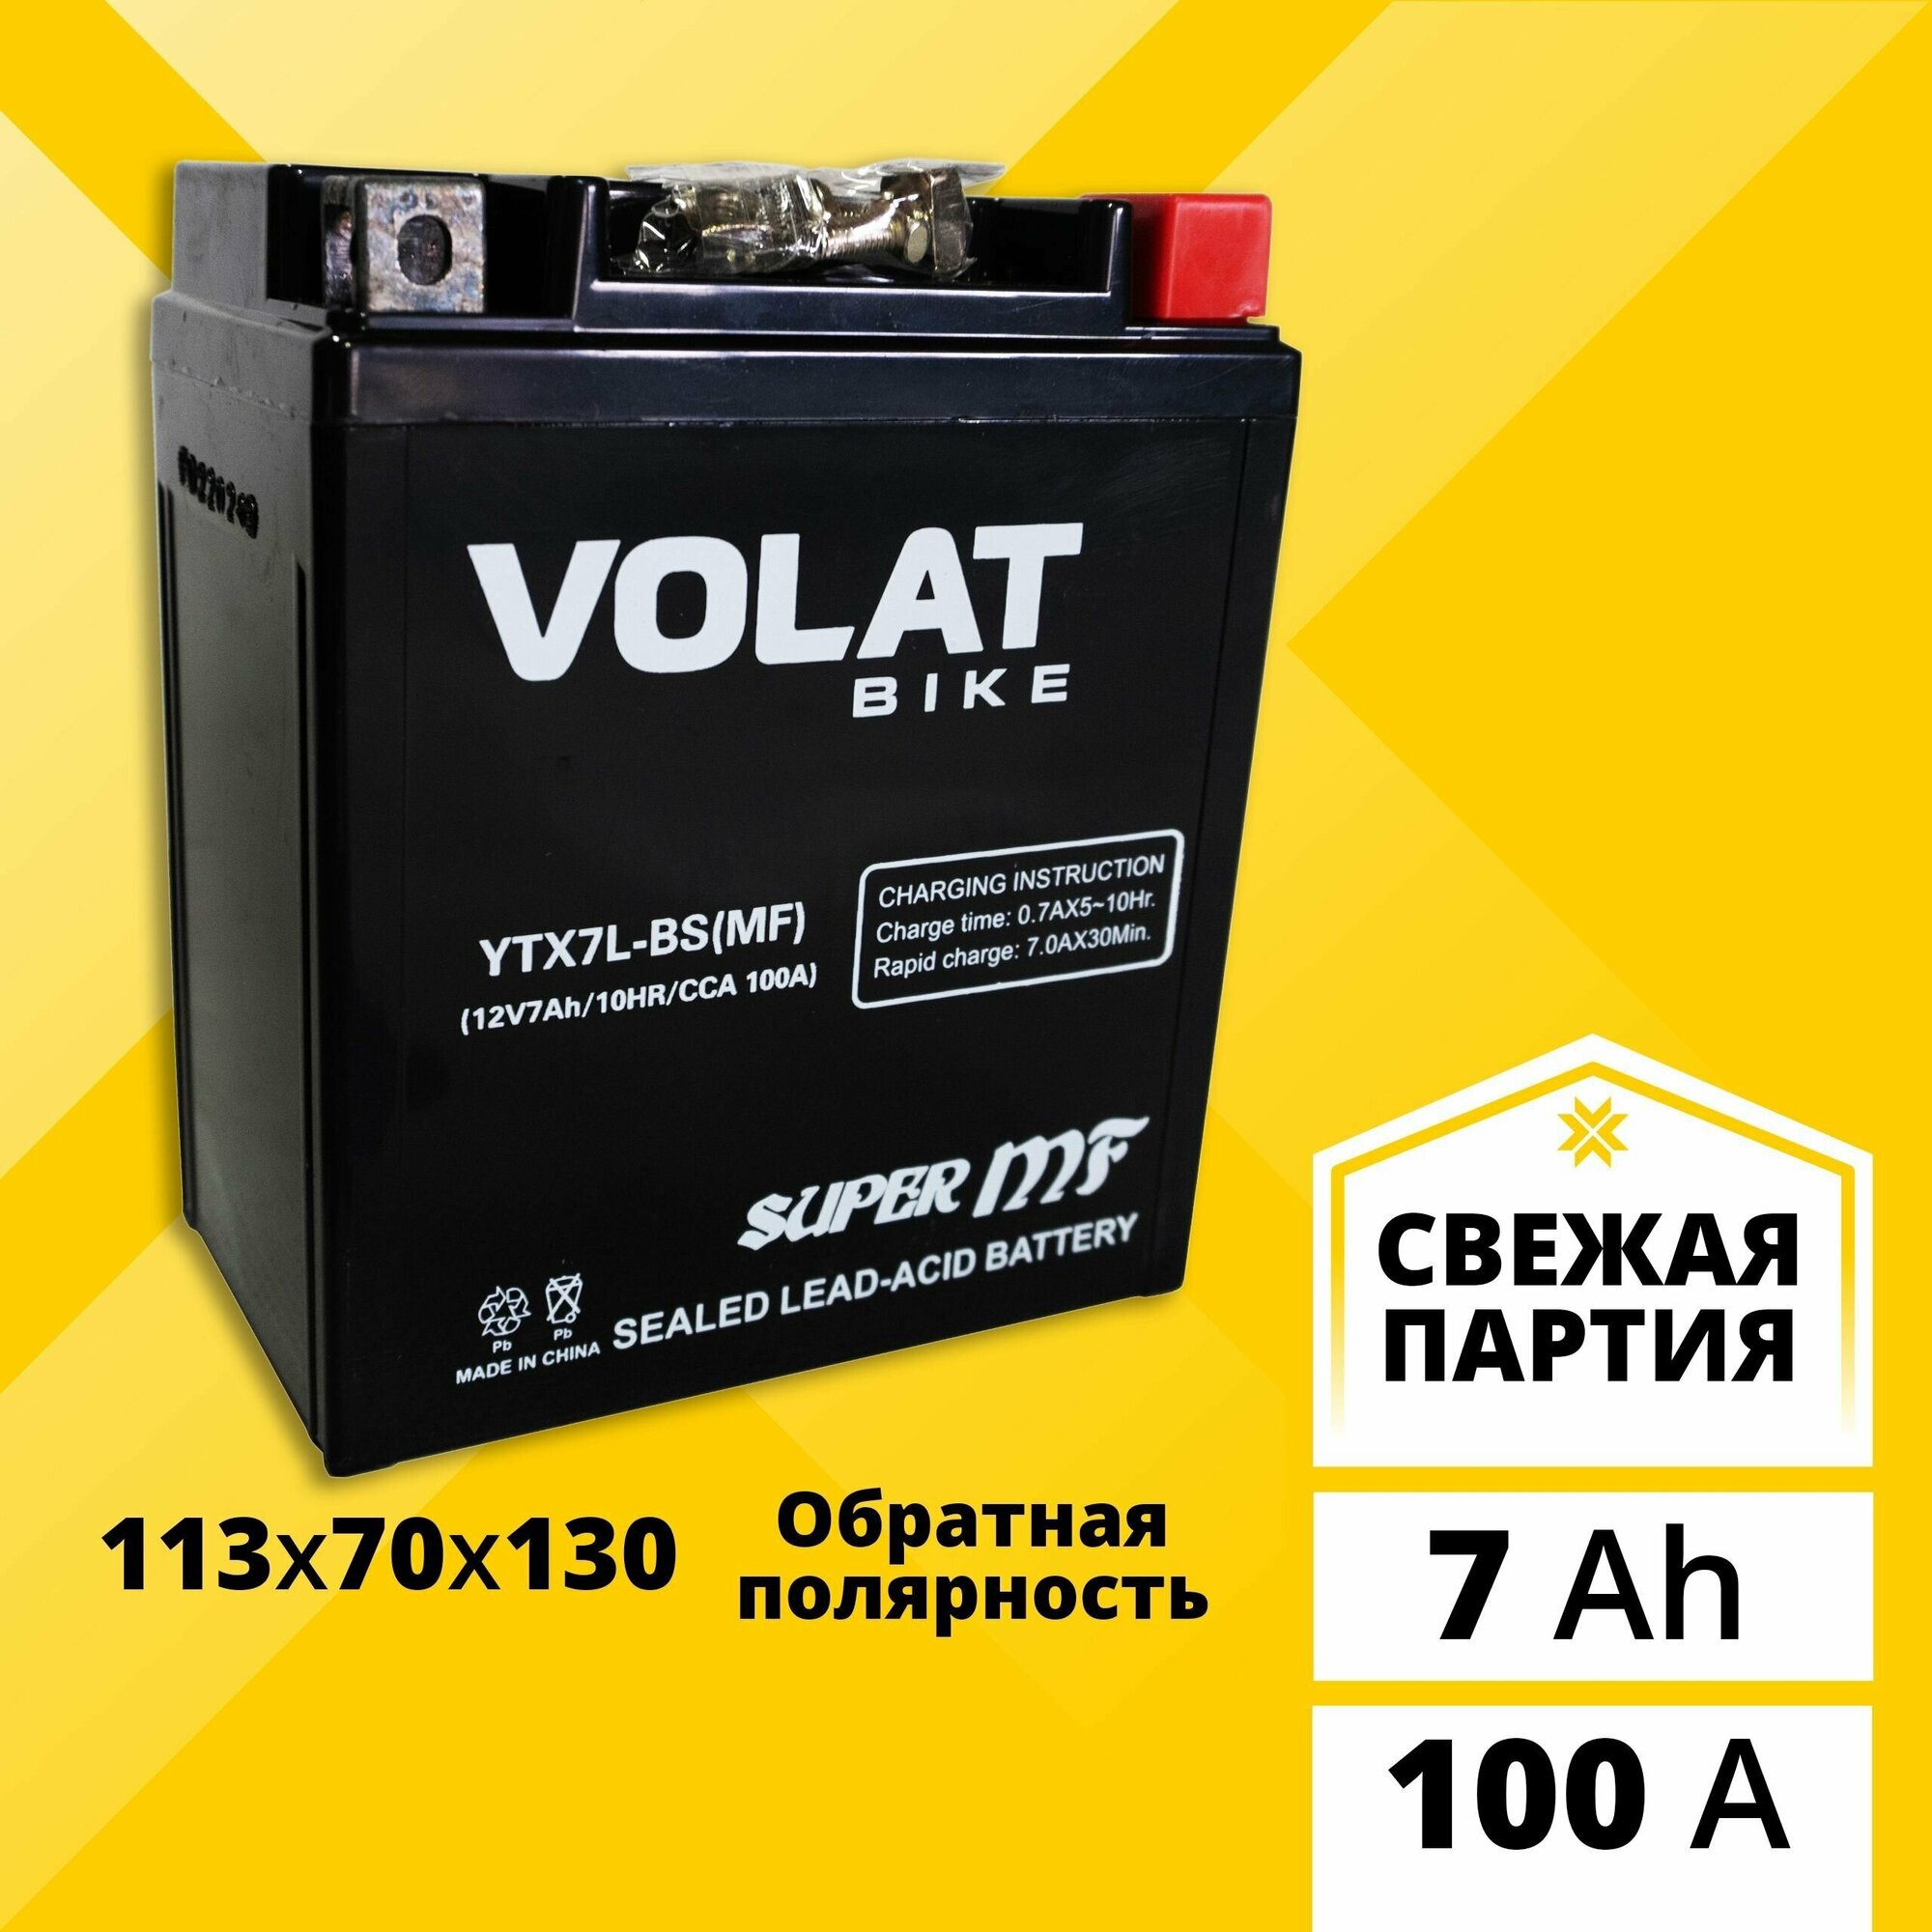 Аккумулятор для мотоцикла 12в 7 Ah 100 A обратная полярность VOLAT YTX7L-BS (MF) акб 12v AGM для мопеда скутера квадроцикла 113x70x130